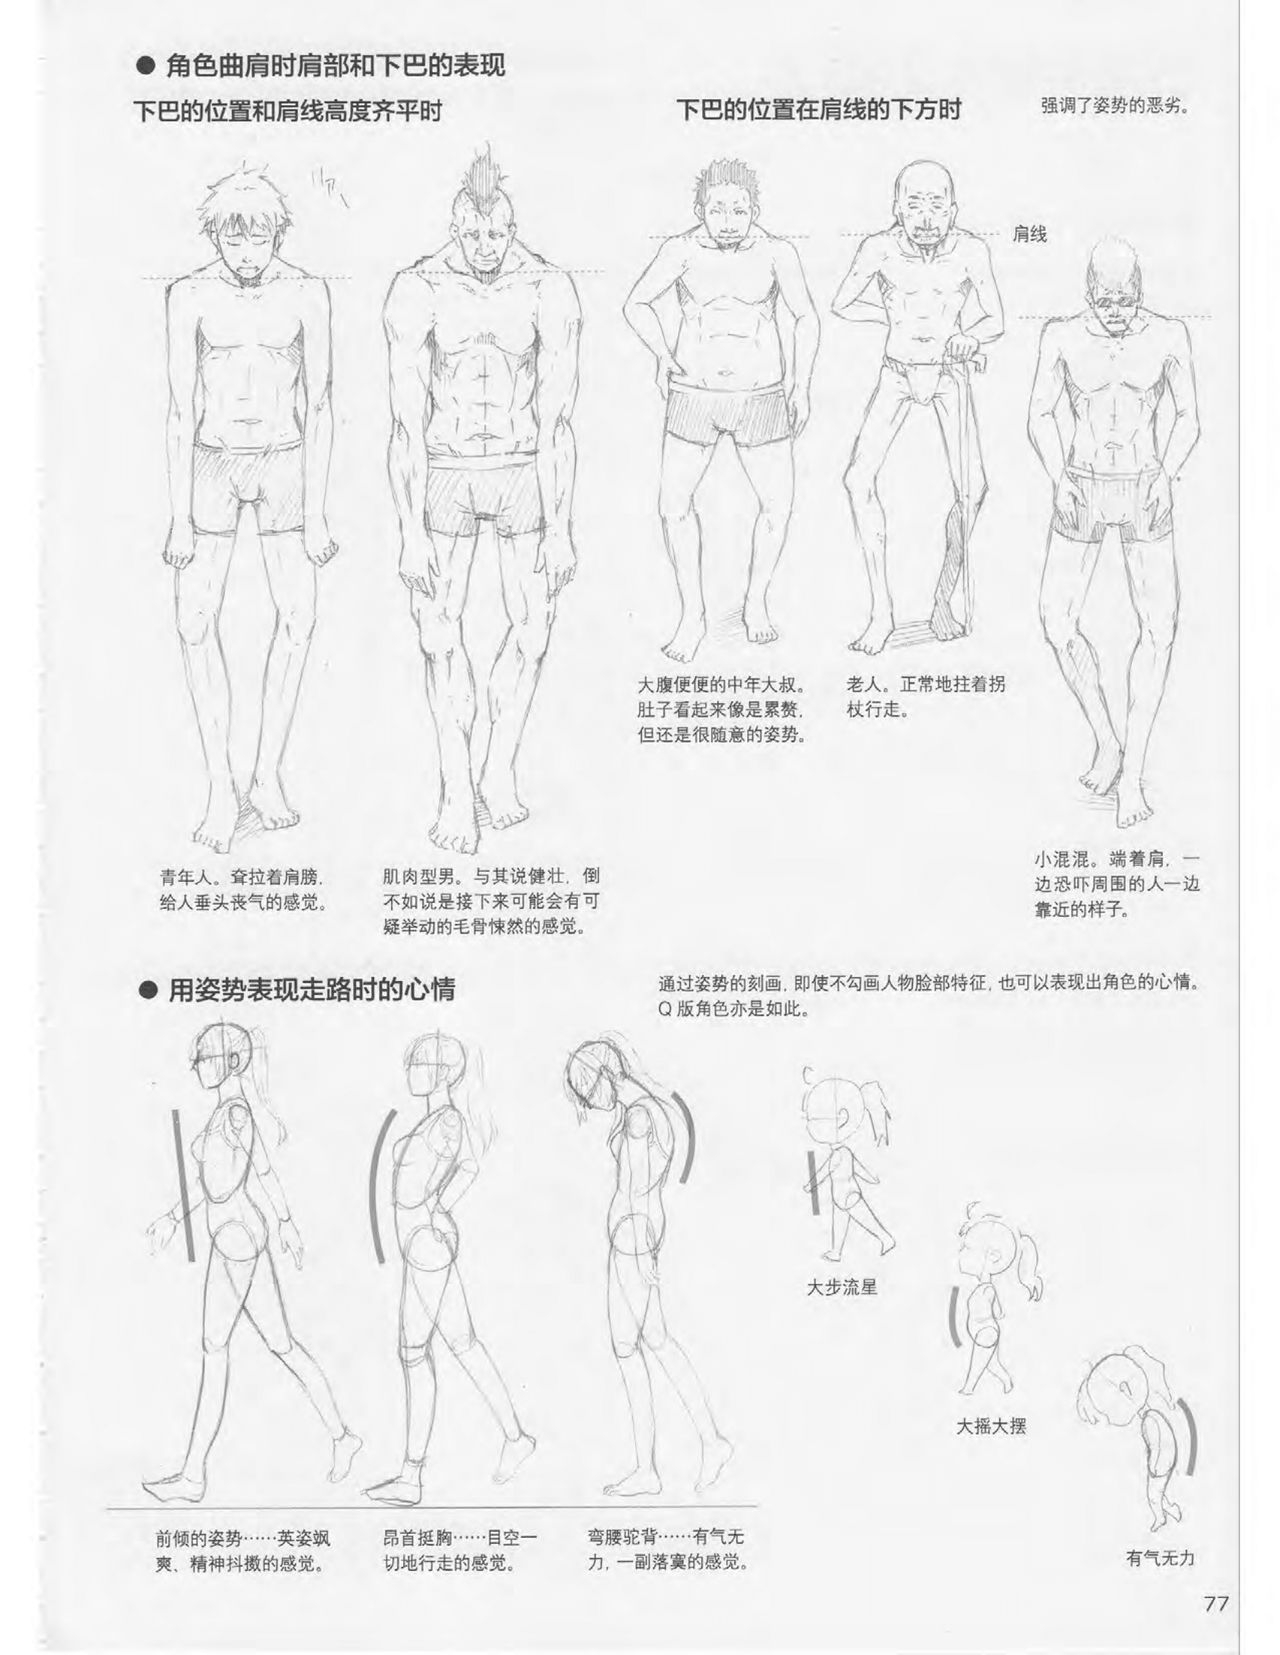 Japanese Manga Master Lecture 3: Lin Akira and Kakumaru Maru Talk About Glamorous Character Modeling 77